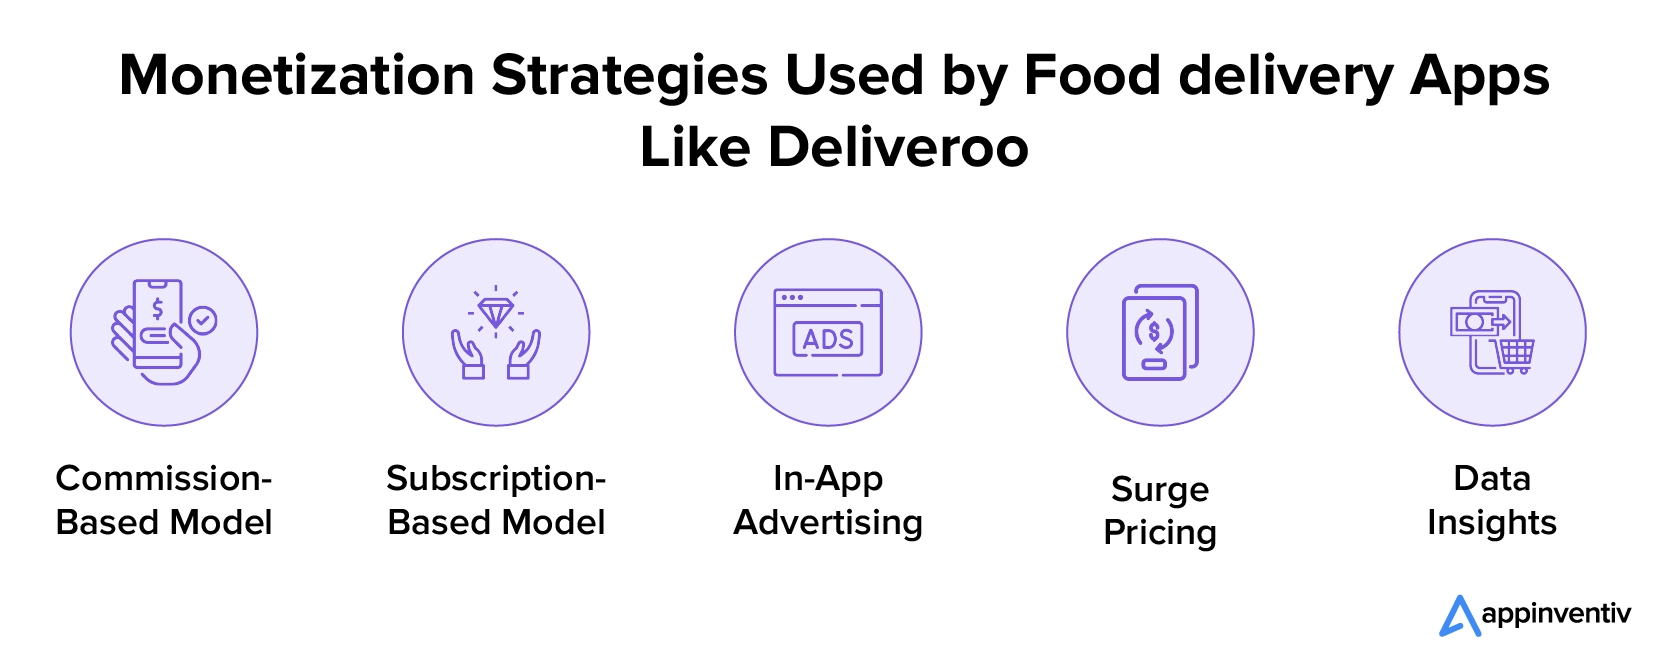 Strategii de generare de bani utilizate de aplicațiile de livrare de alimente precum Deliveroo